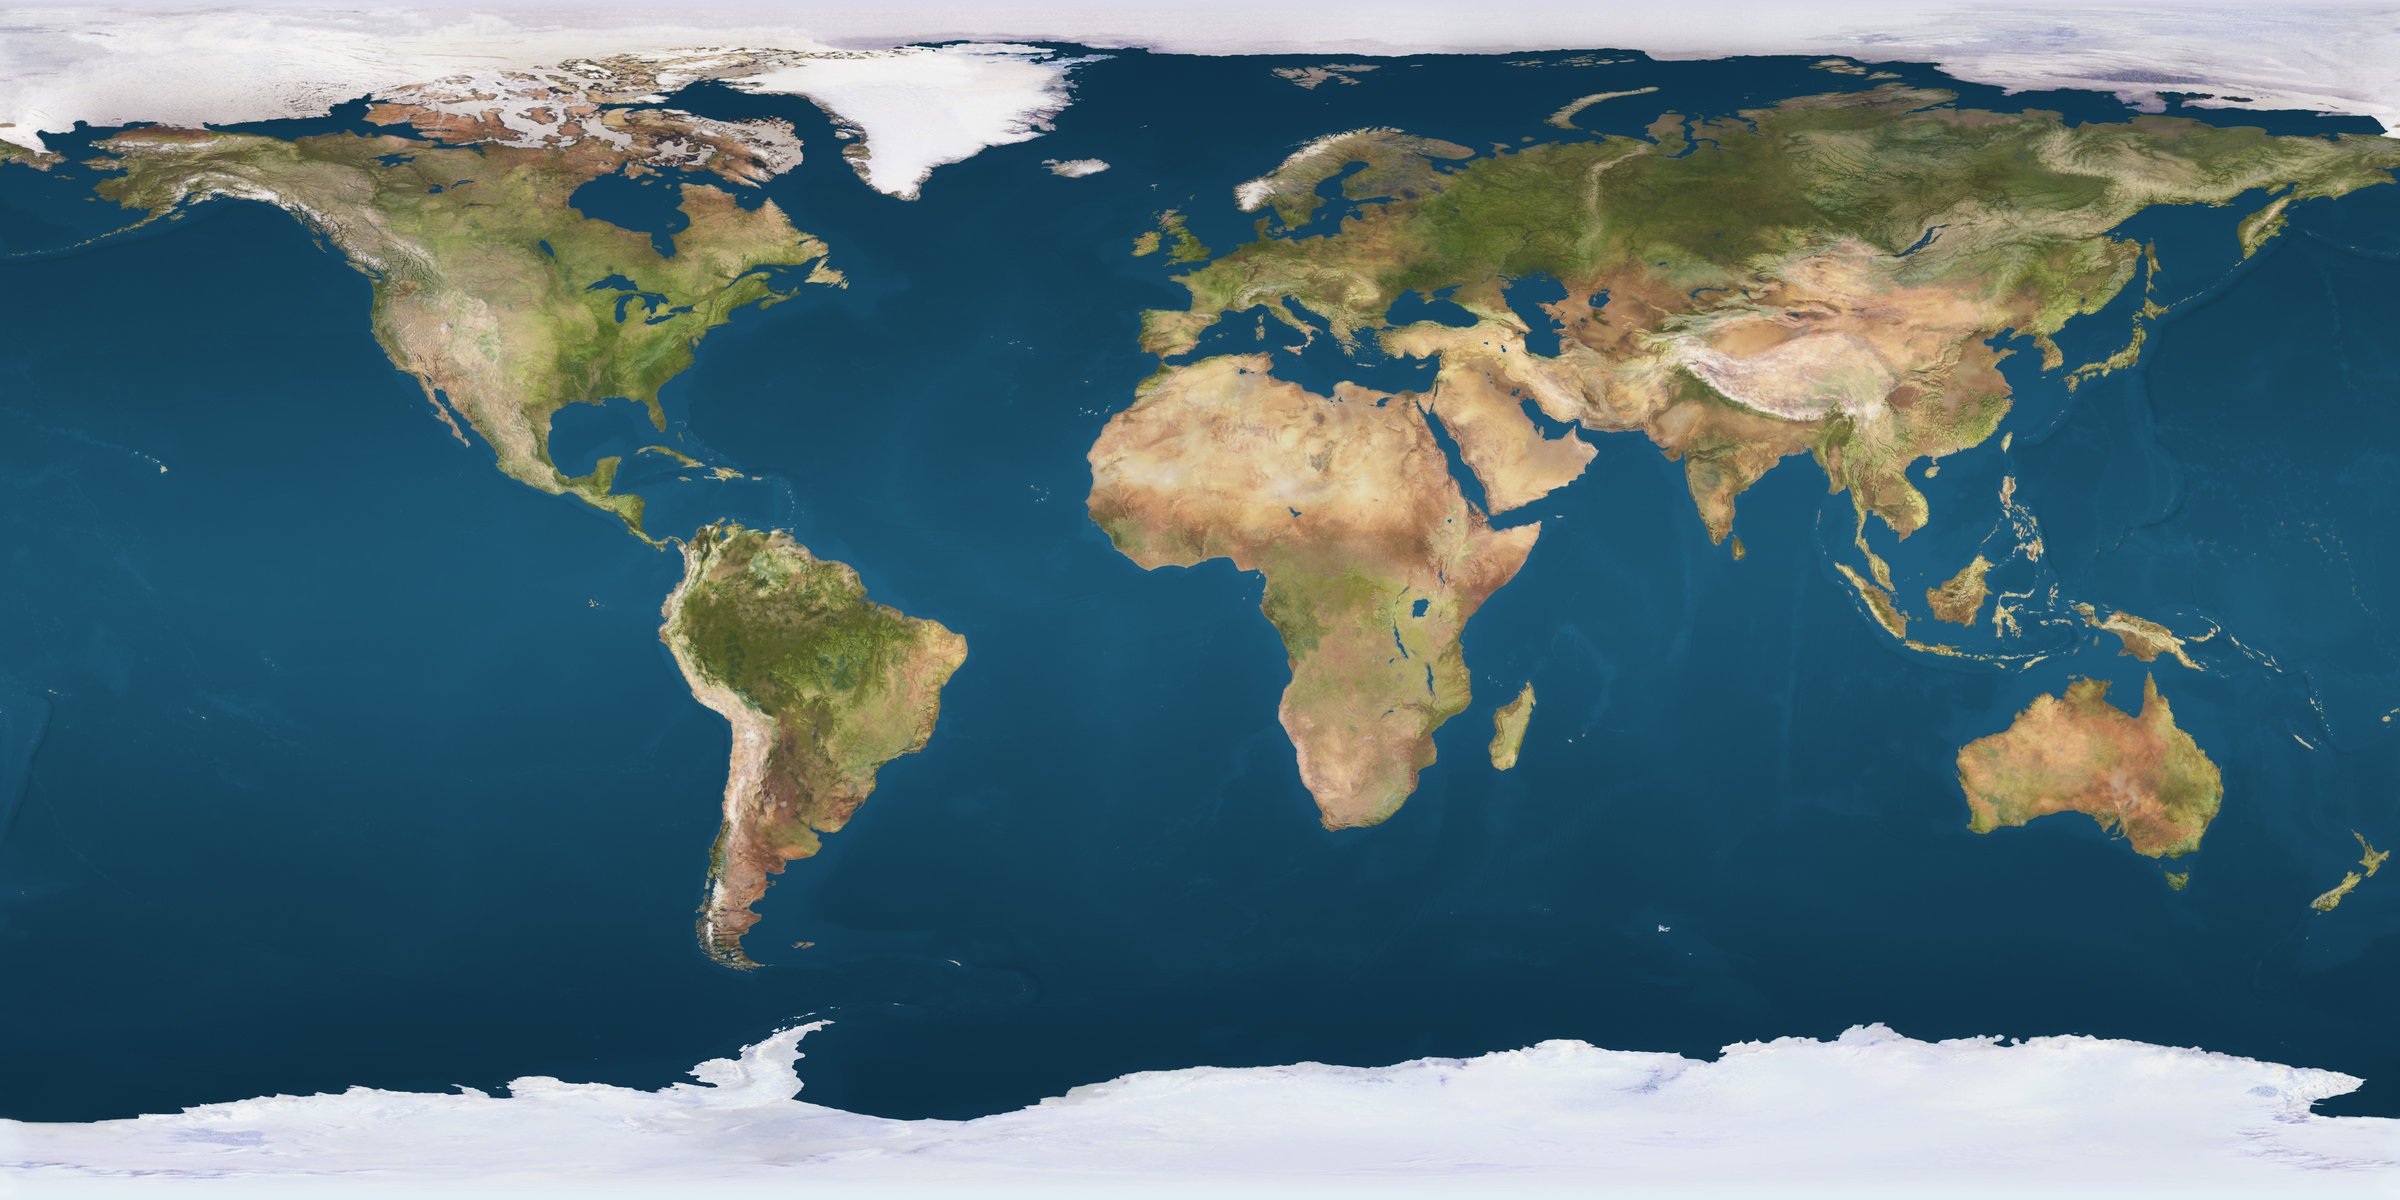 Физическая карта земли с ее материками и океанами